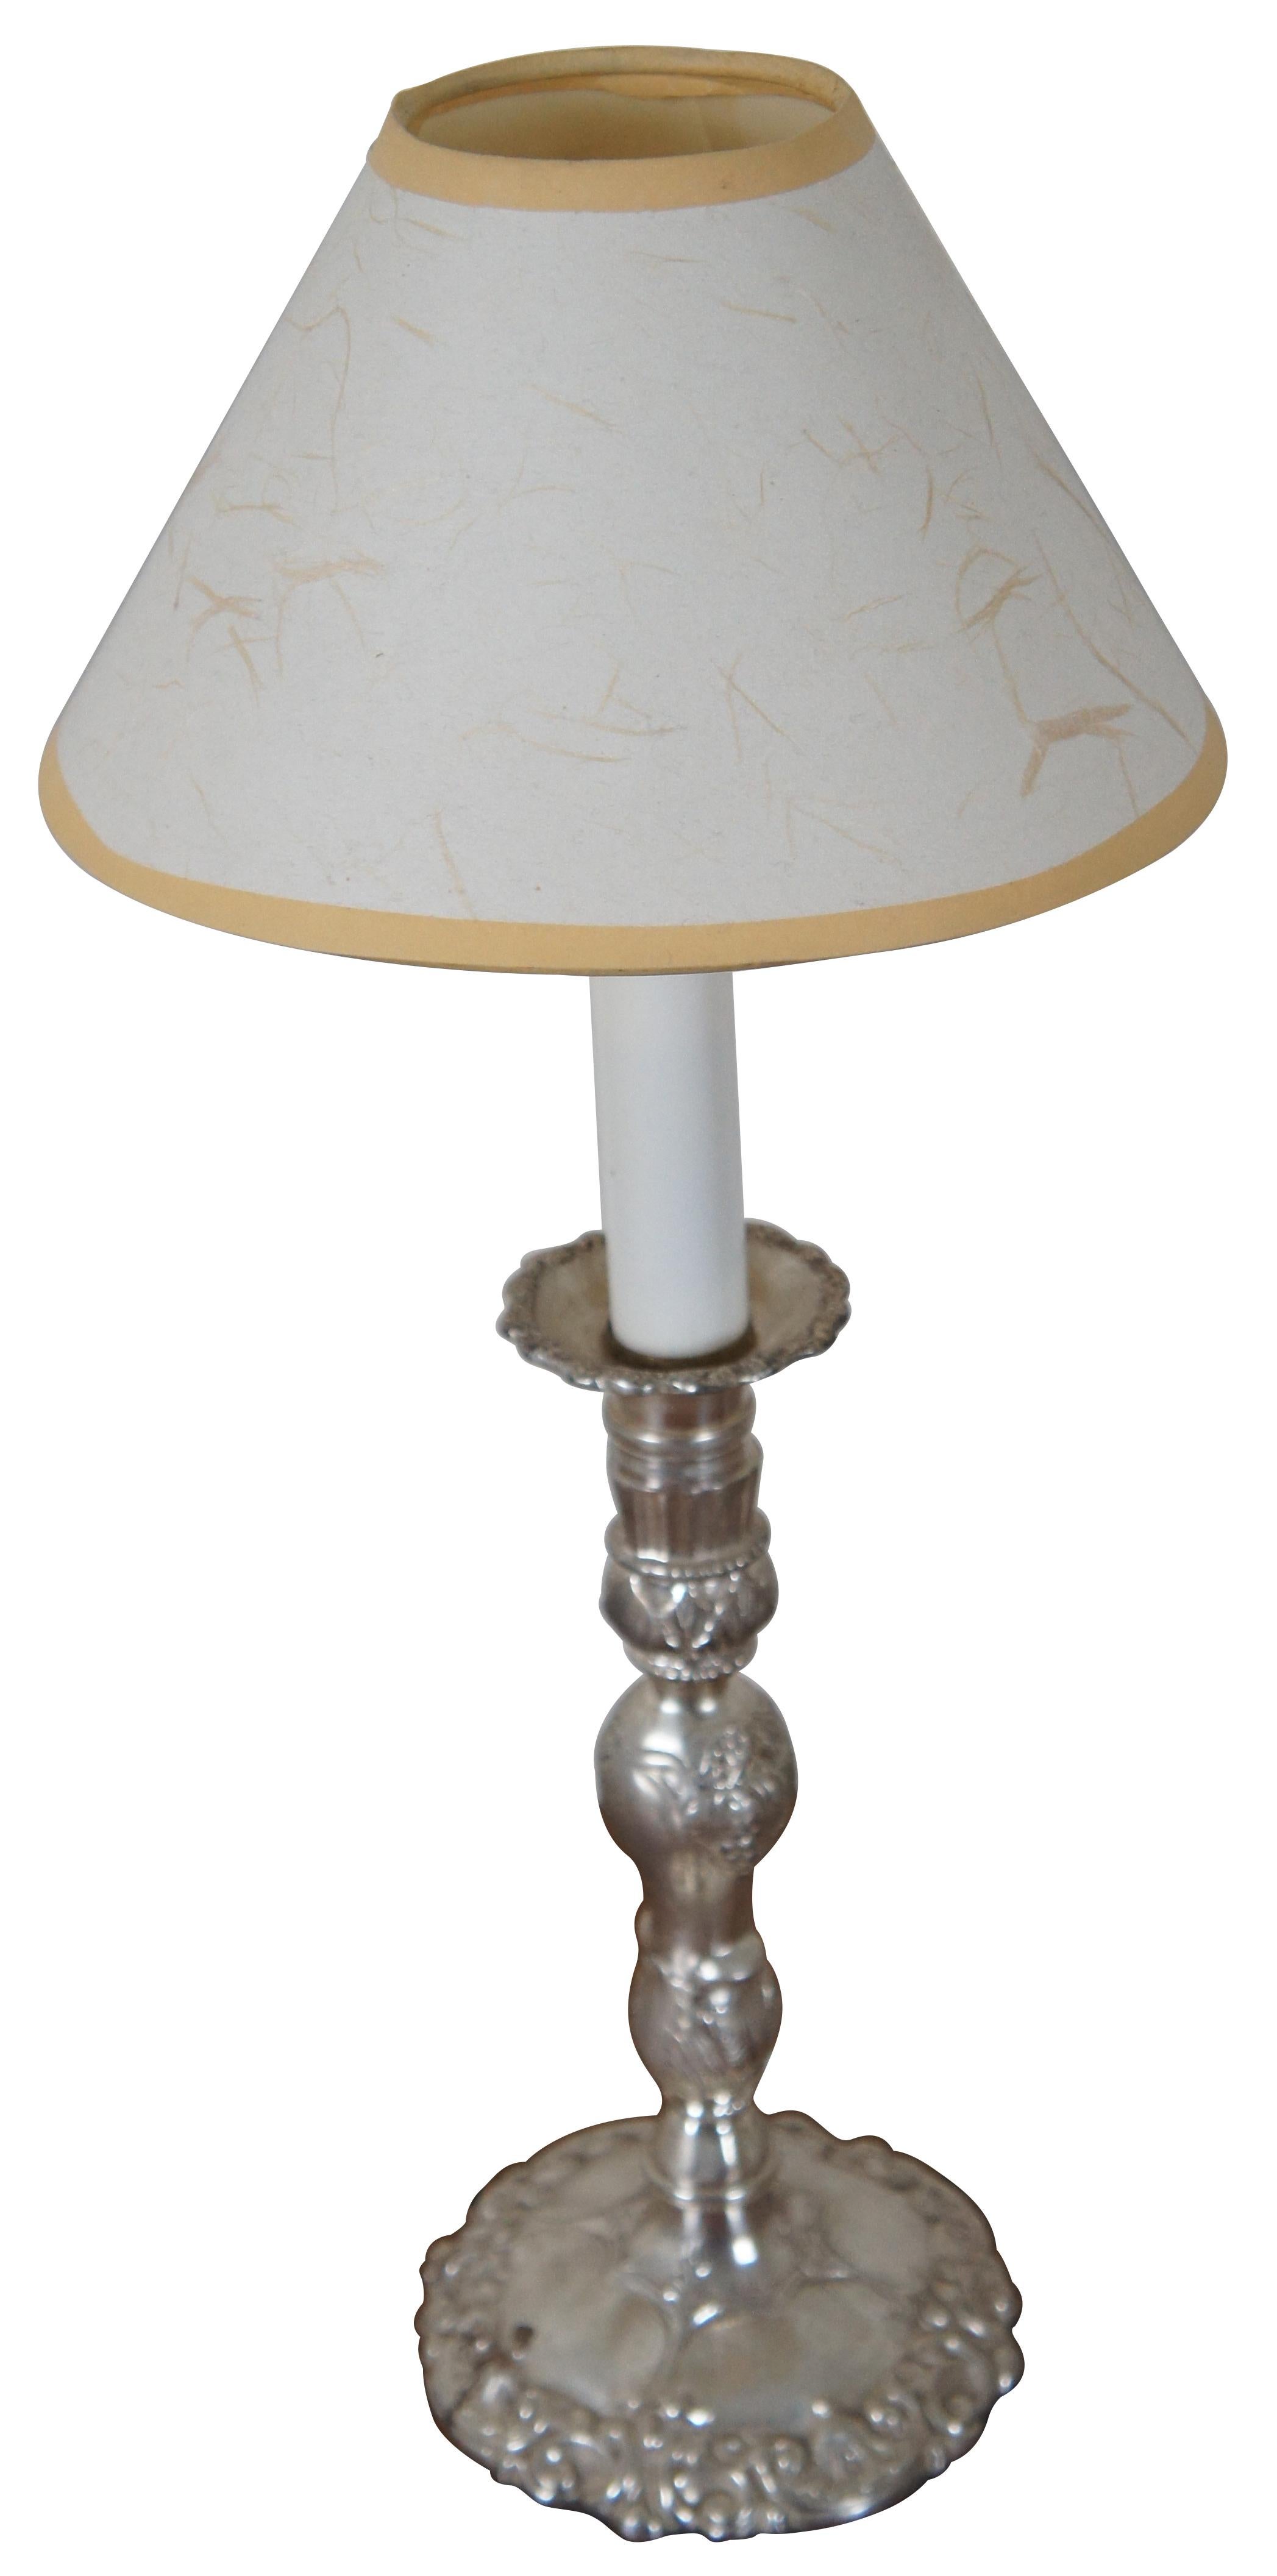 Lampe de table / buffet ancienne de style néoclassique en métal argenté en forme de chandelier avec abat-jour en papier blanc et jaune.

5